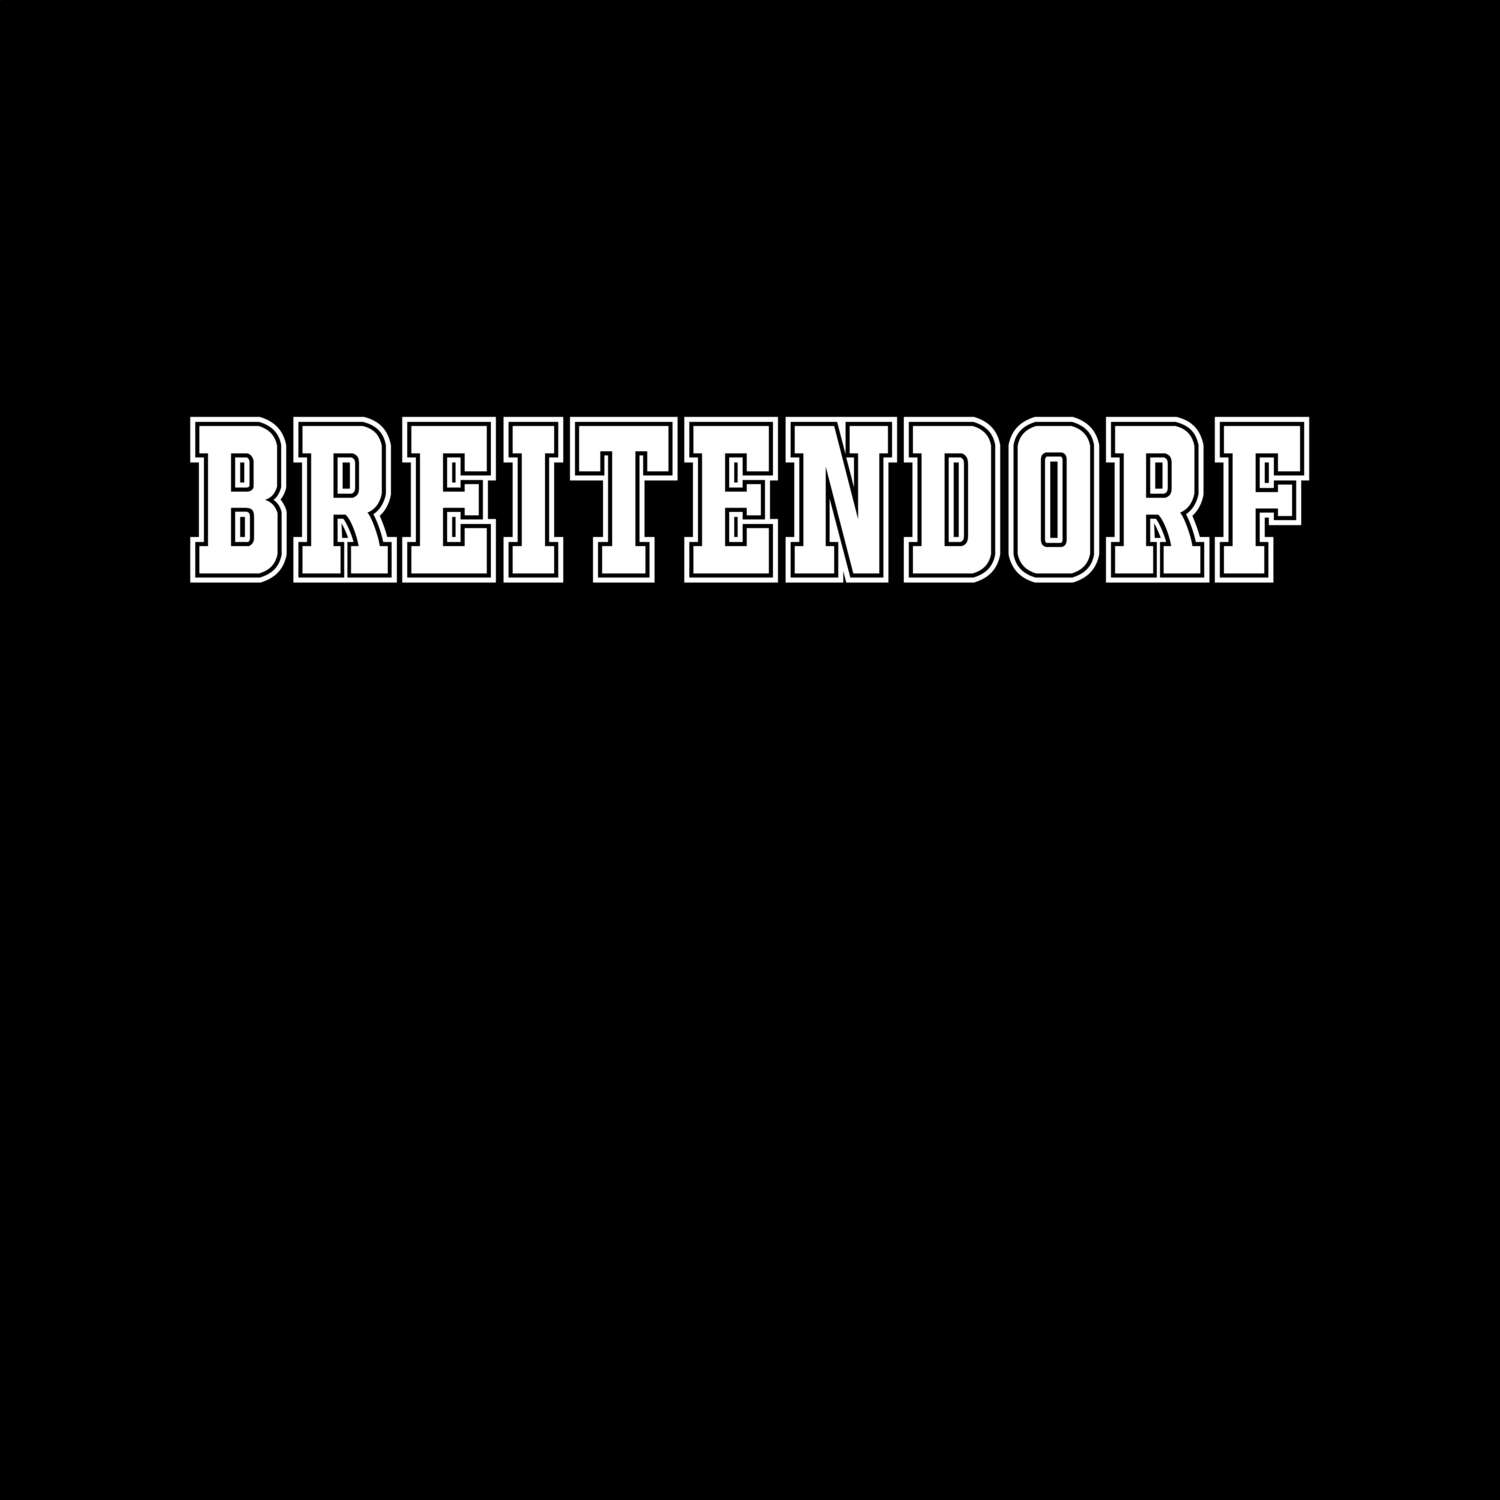 Breitendorf T-Shirt »Classic«